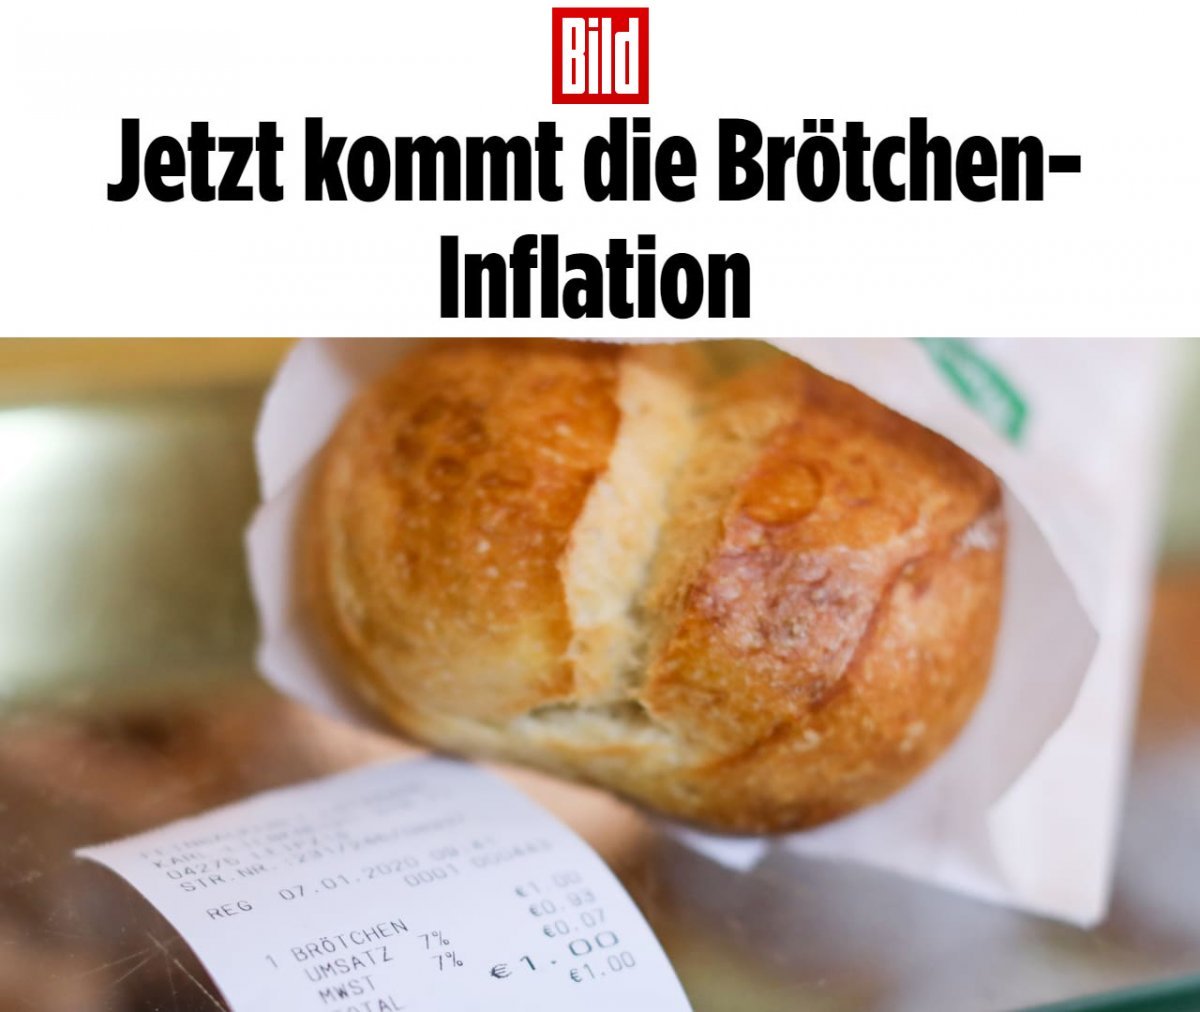 Almanya da ekmek fiyatı tartışma konusu oldu #1